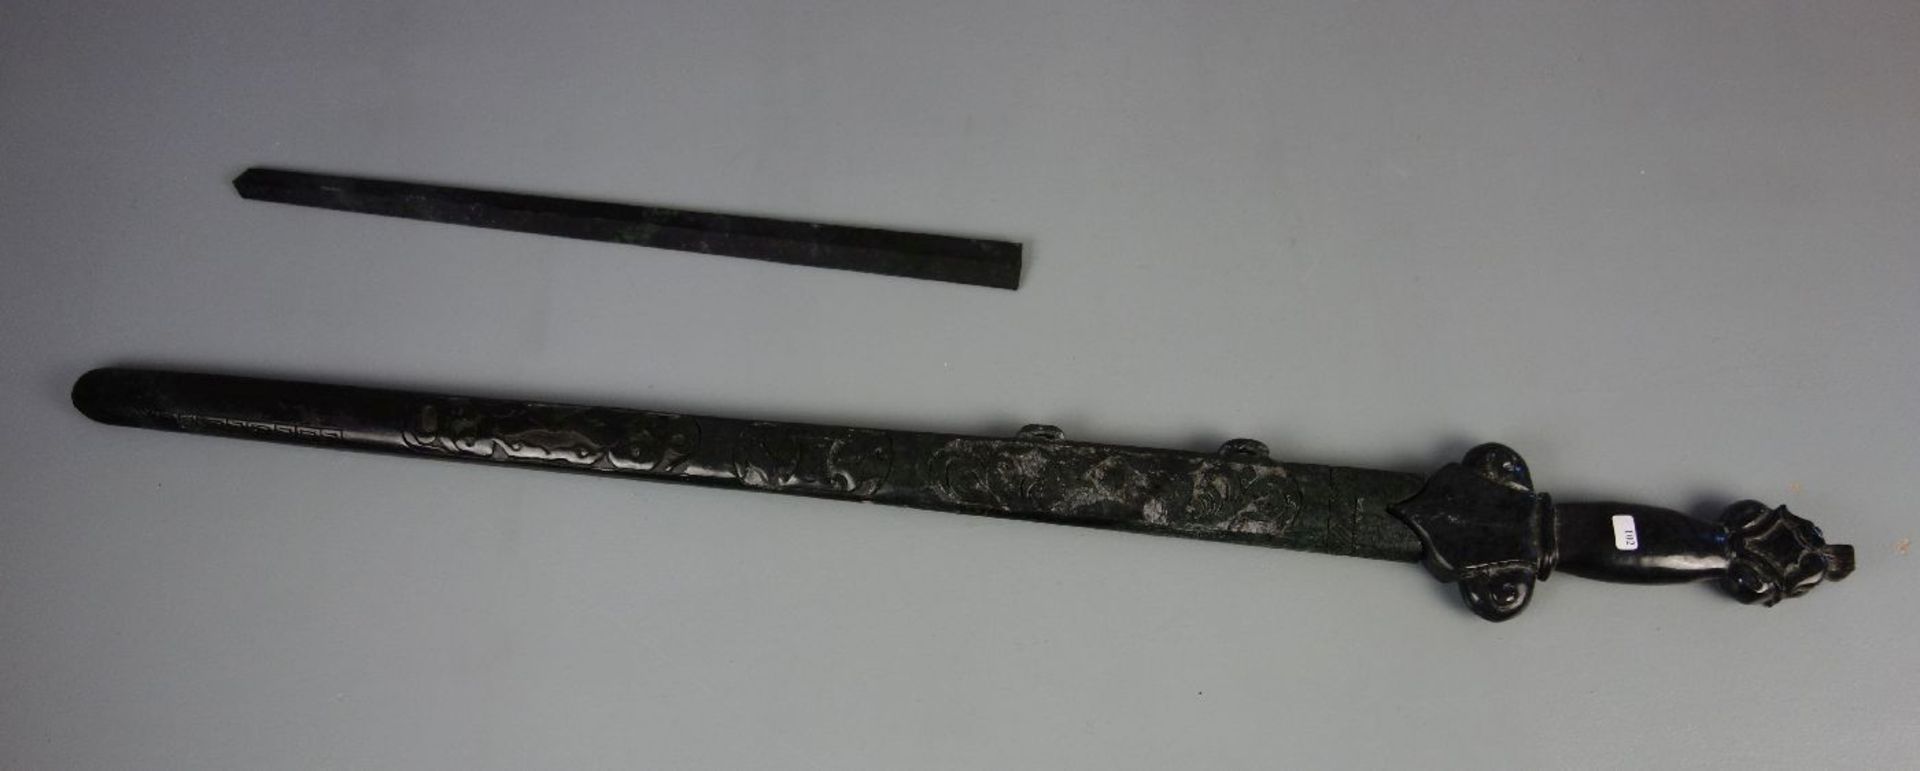 JADESCHWERT / jade sword, China. Stilisiertes Schwert aus einem Stück Jade gearbeitet mit